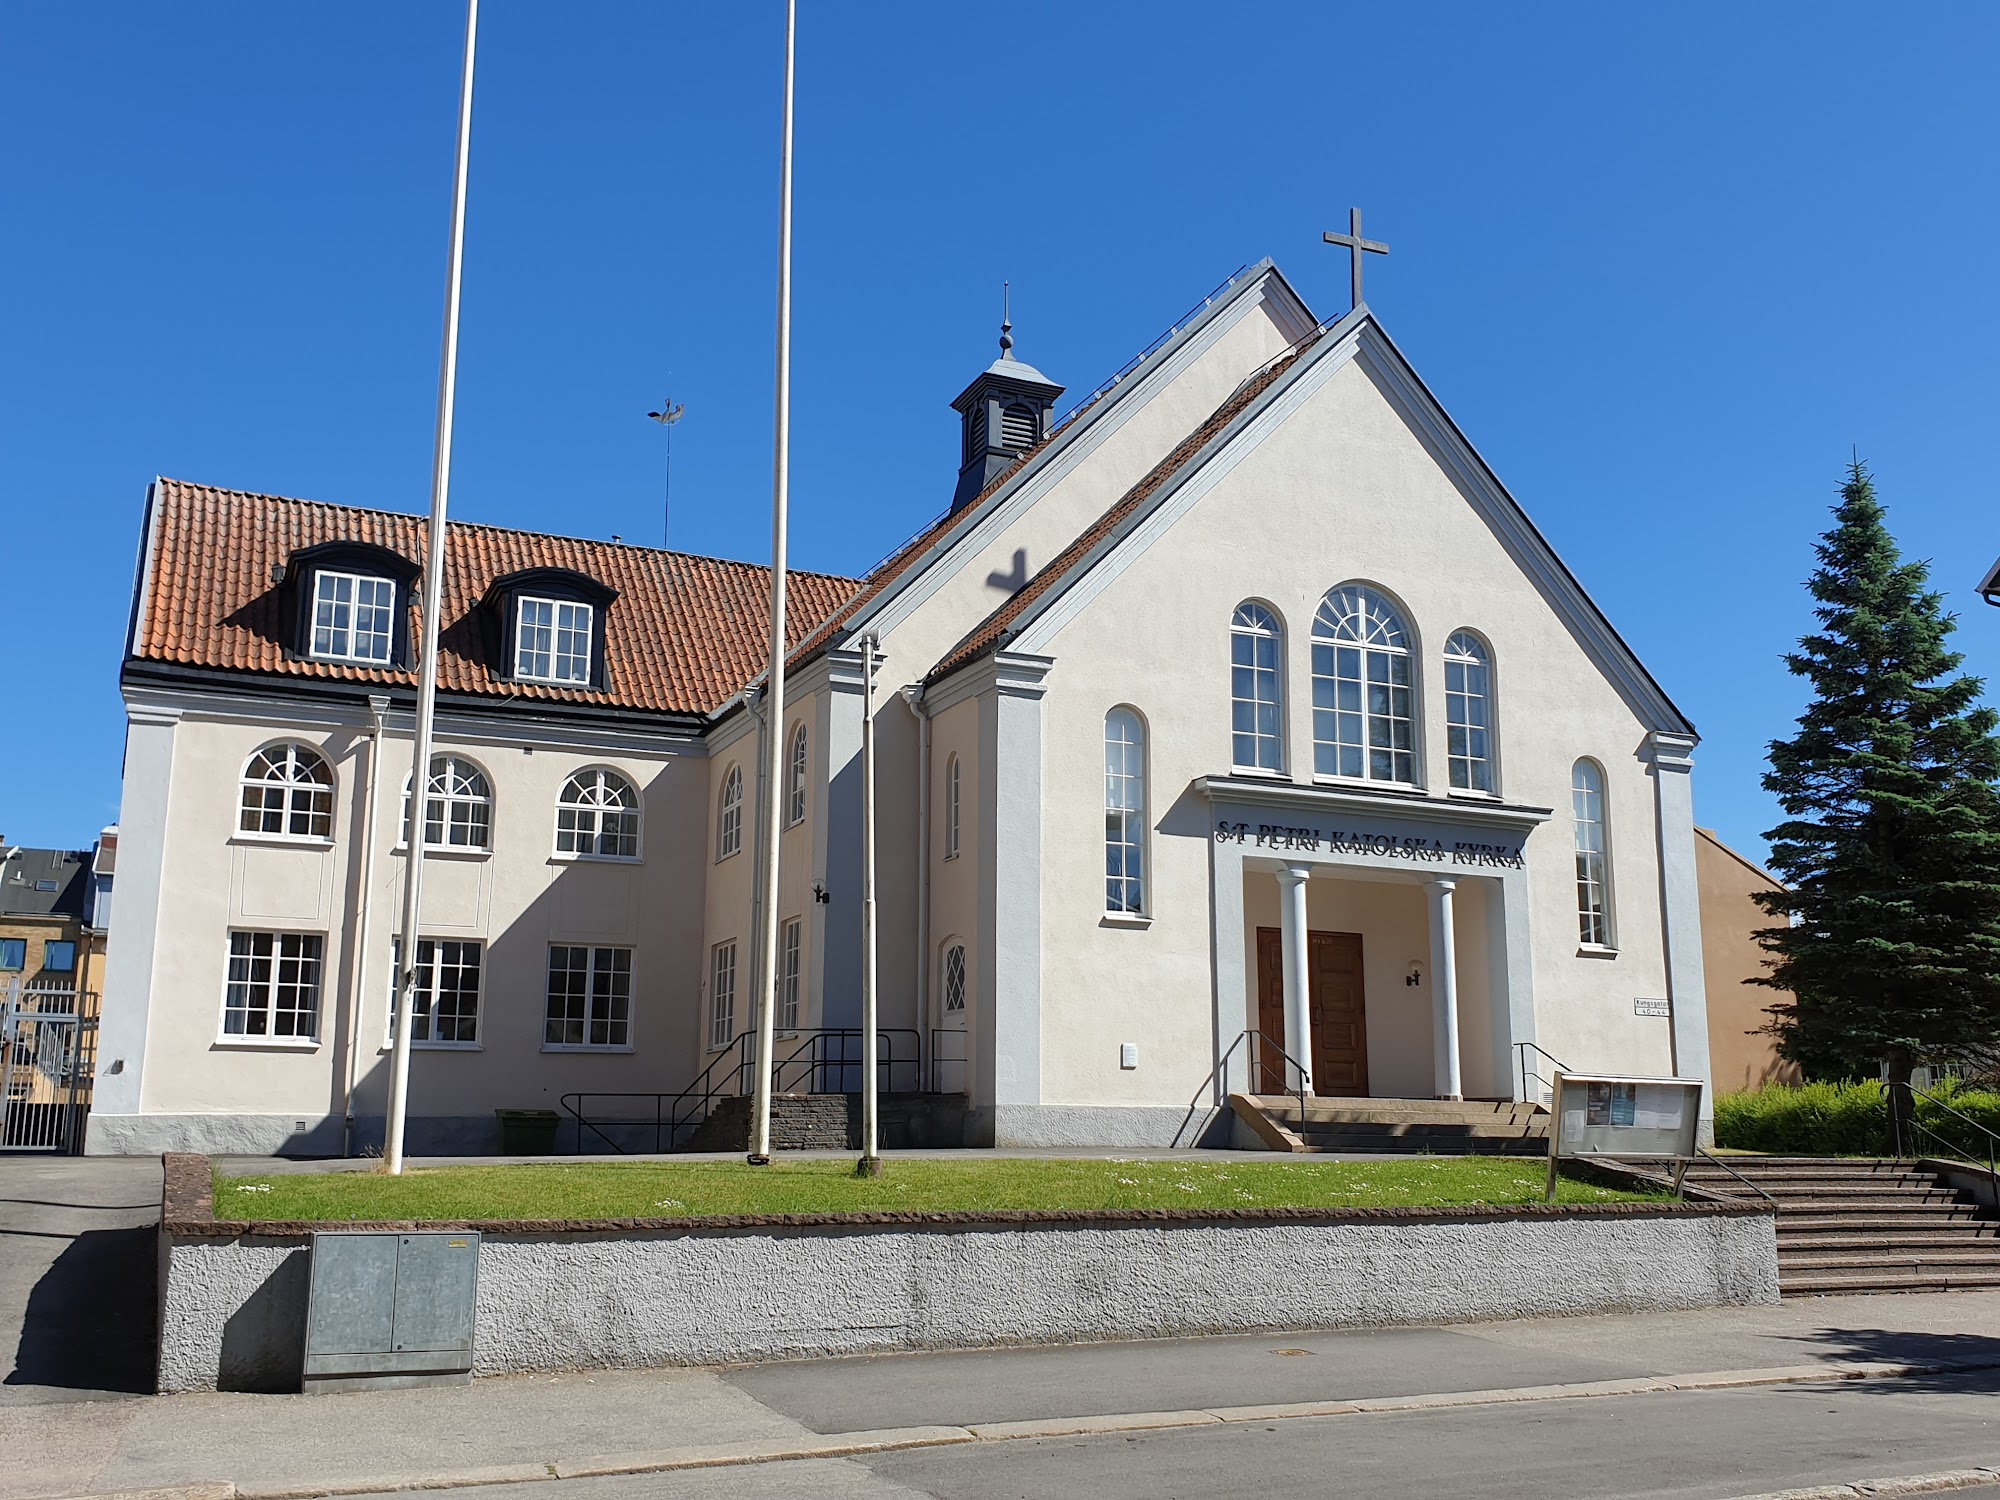 Katolska kyrkan i Trollhättan